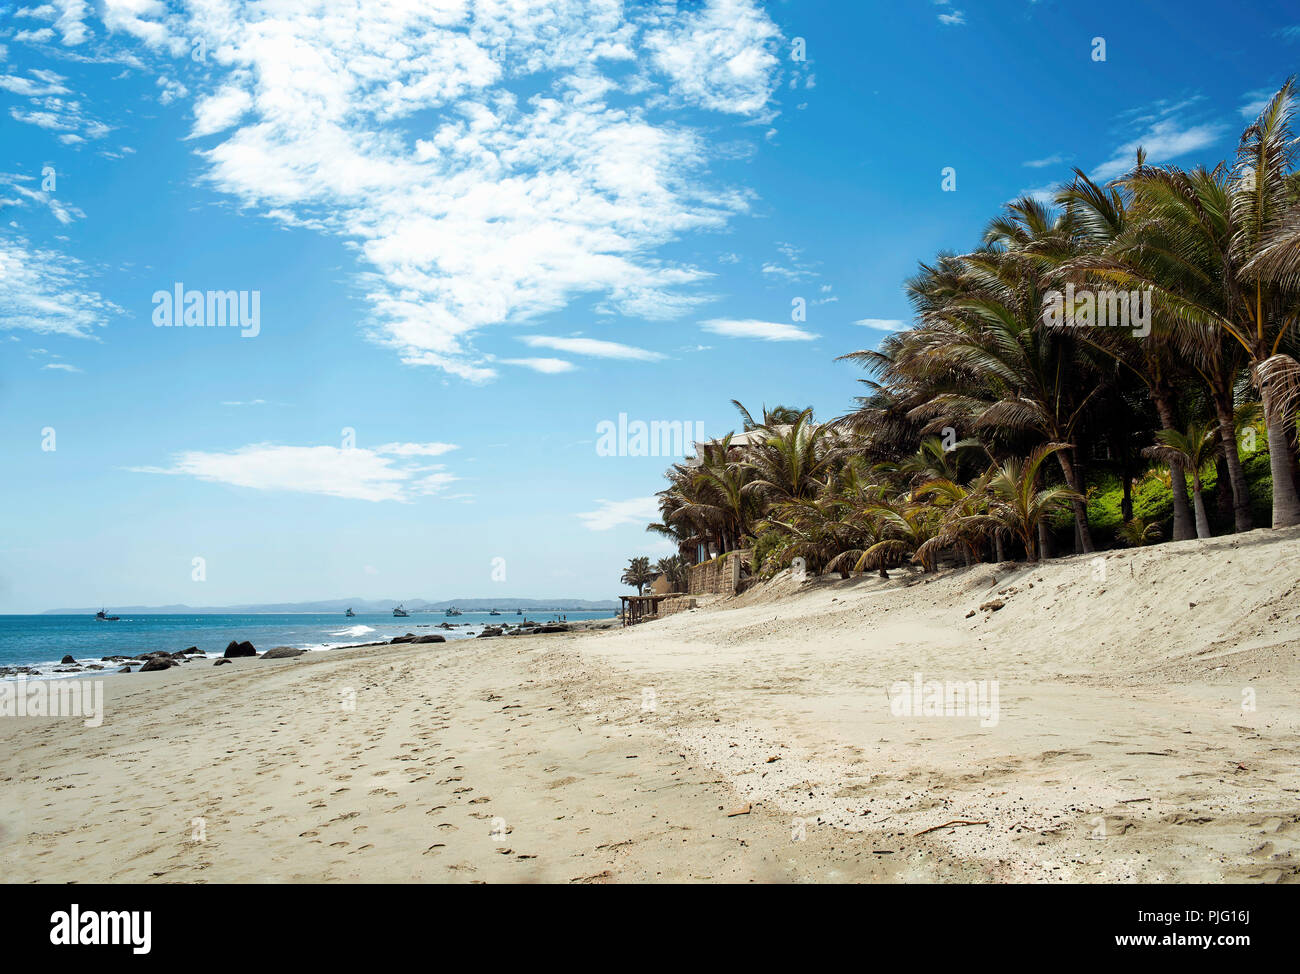 Palmen und dem breiten, feinsandigen Strand in der Nähe von Vichayito Mancora Strand Stadt, Region Piura, Peru. Aug 2018 Stockfoto